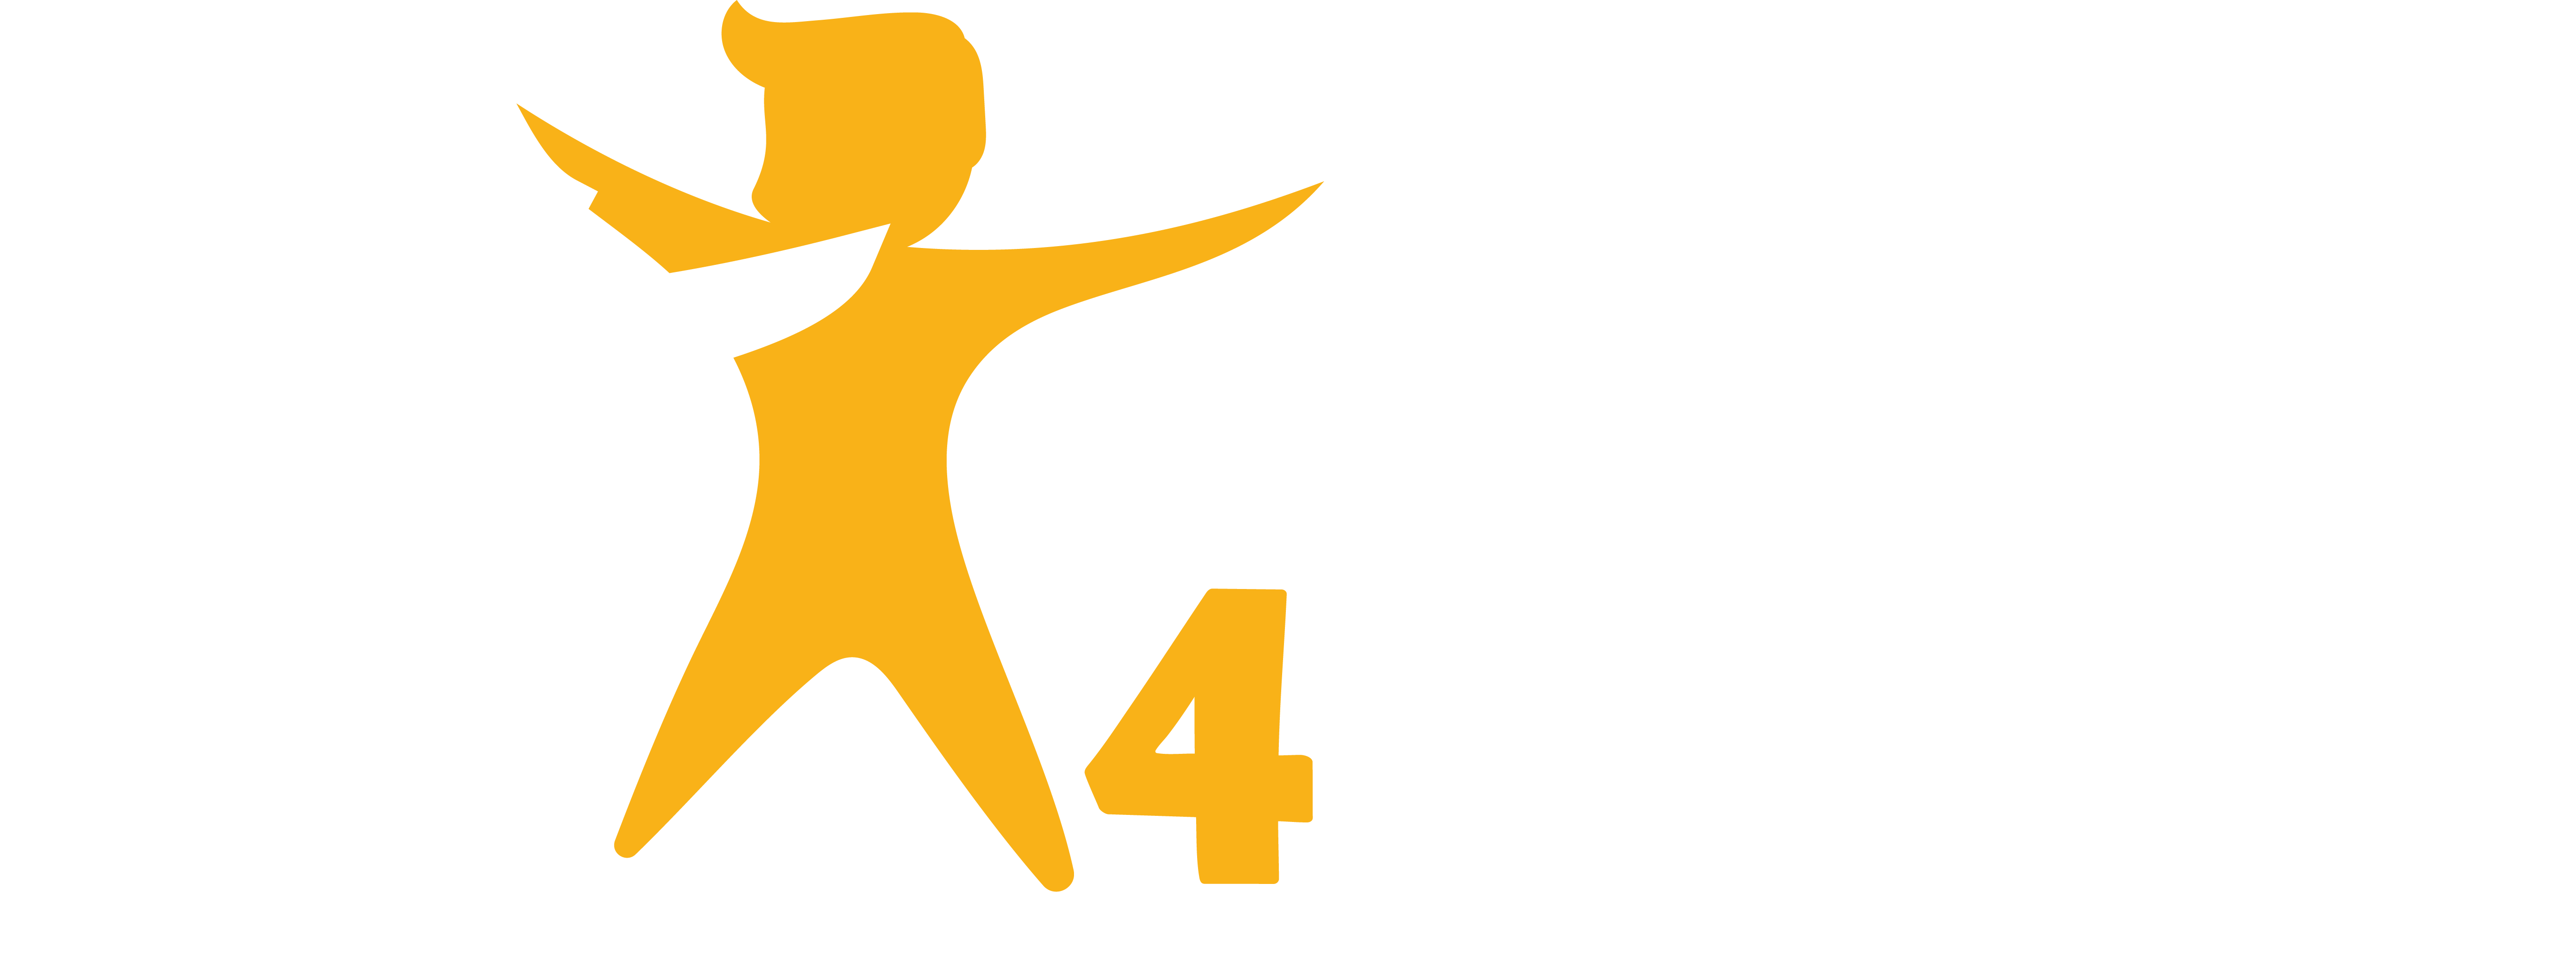 Education 4 Everyone